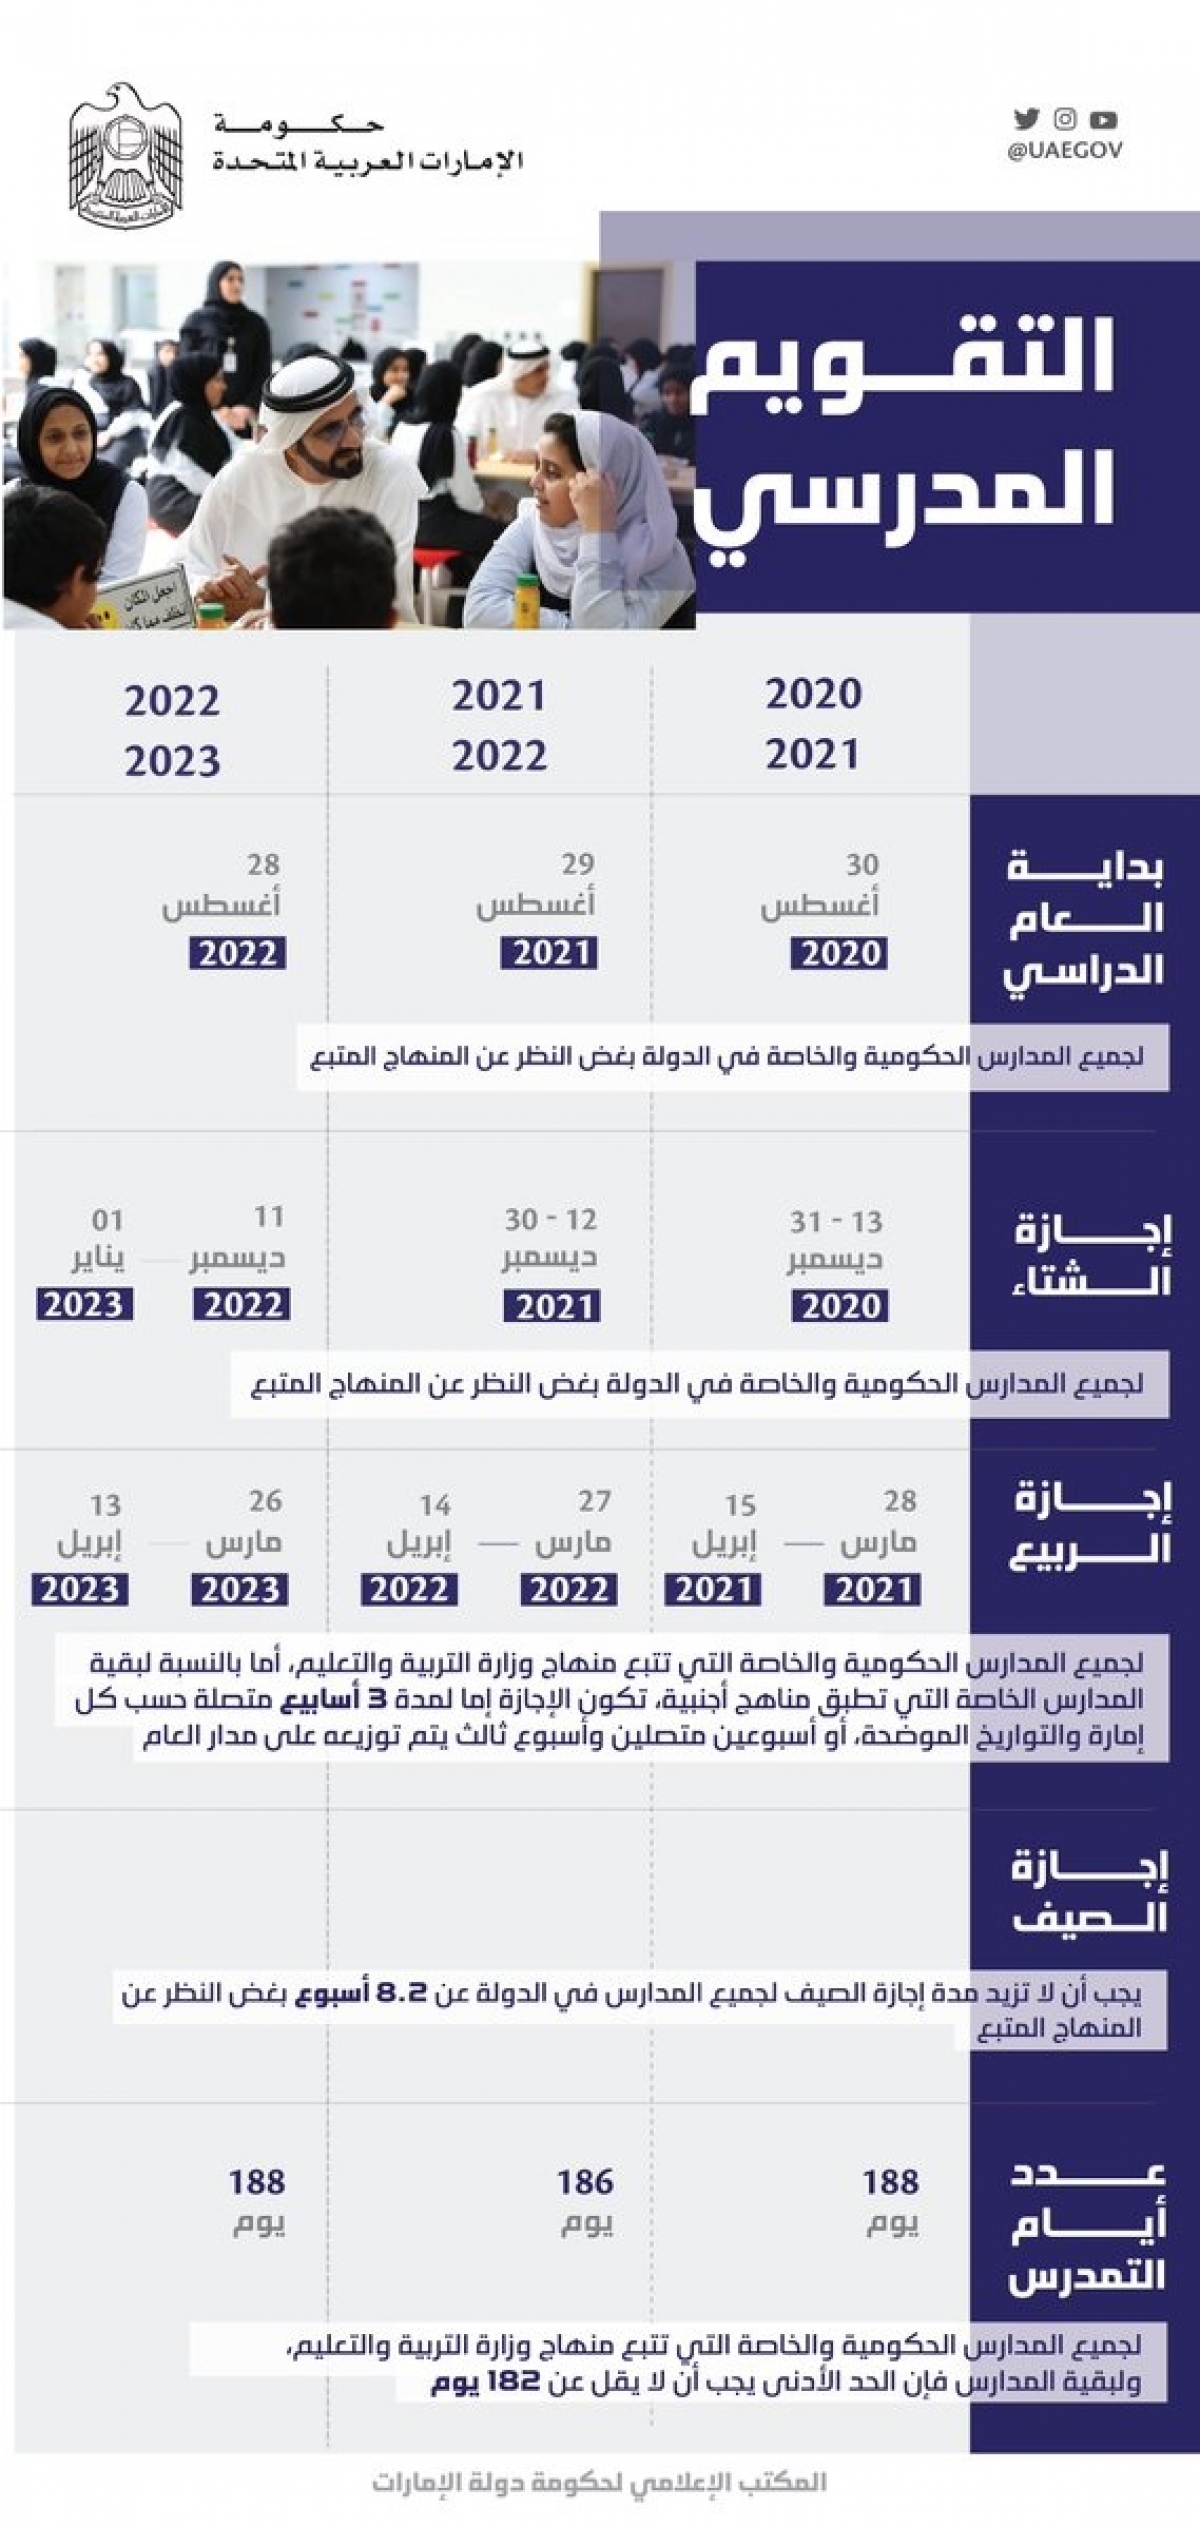 المجلس الوزاري للتنمية يعتمد التقويم المدرسي للمدارس الحكومية والخاصة في الإمارات للثلاث أعوام القادمة